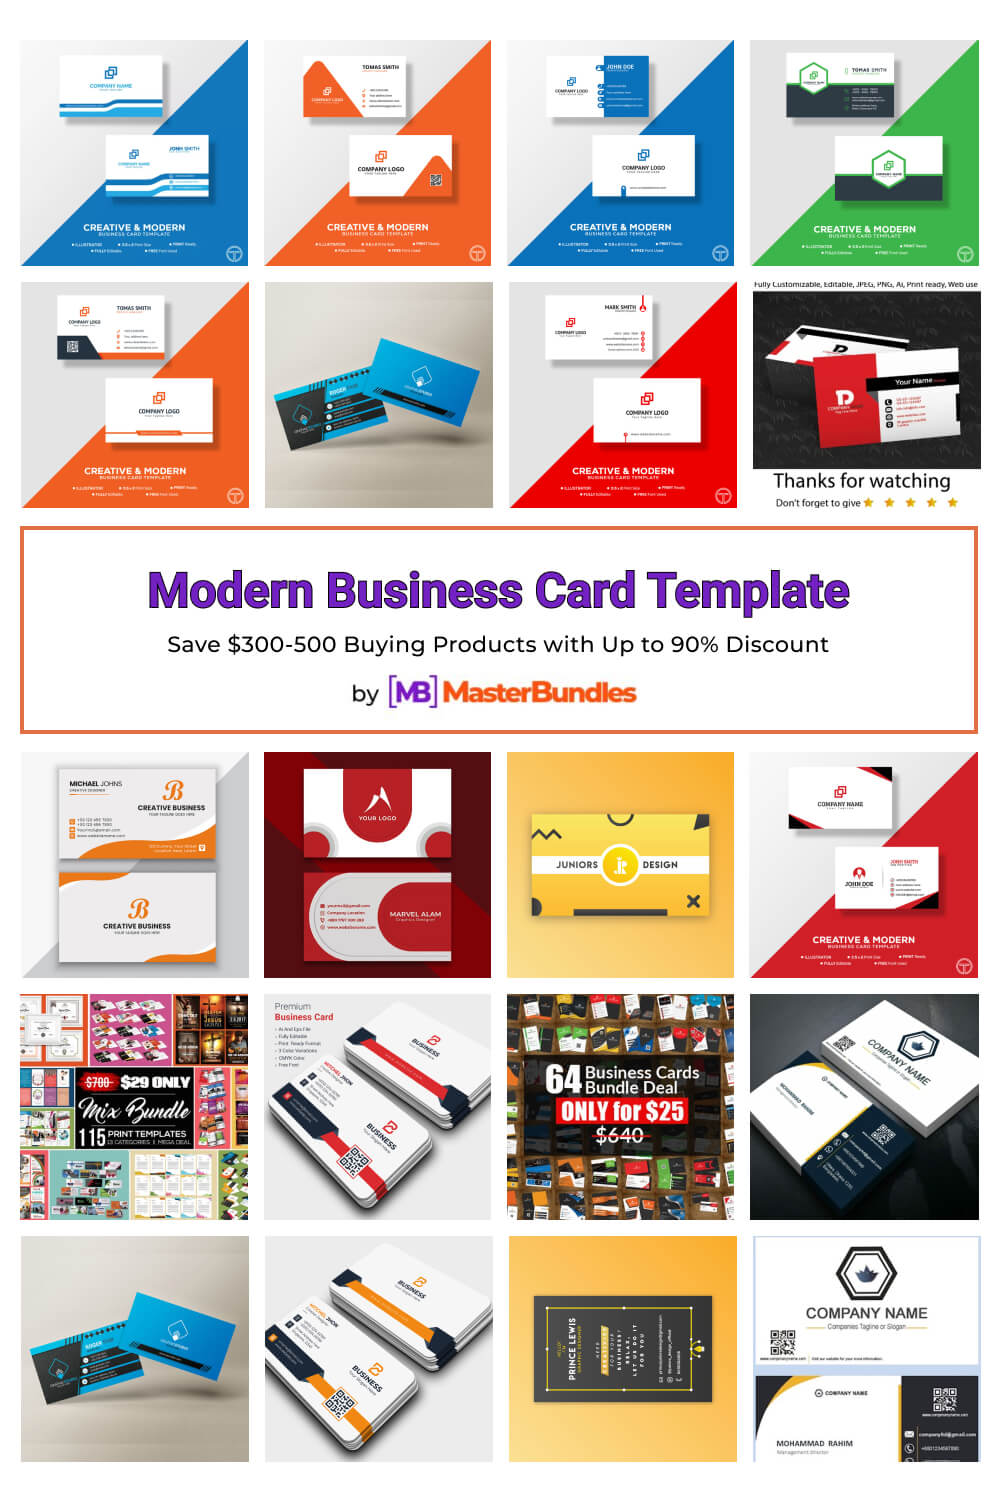 modern business card template pinterest image.